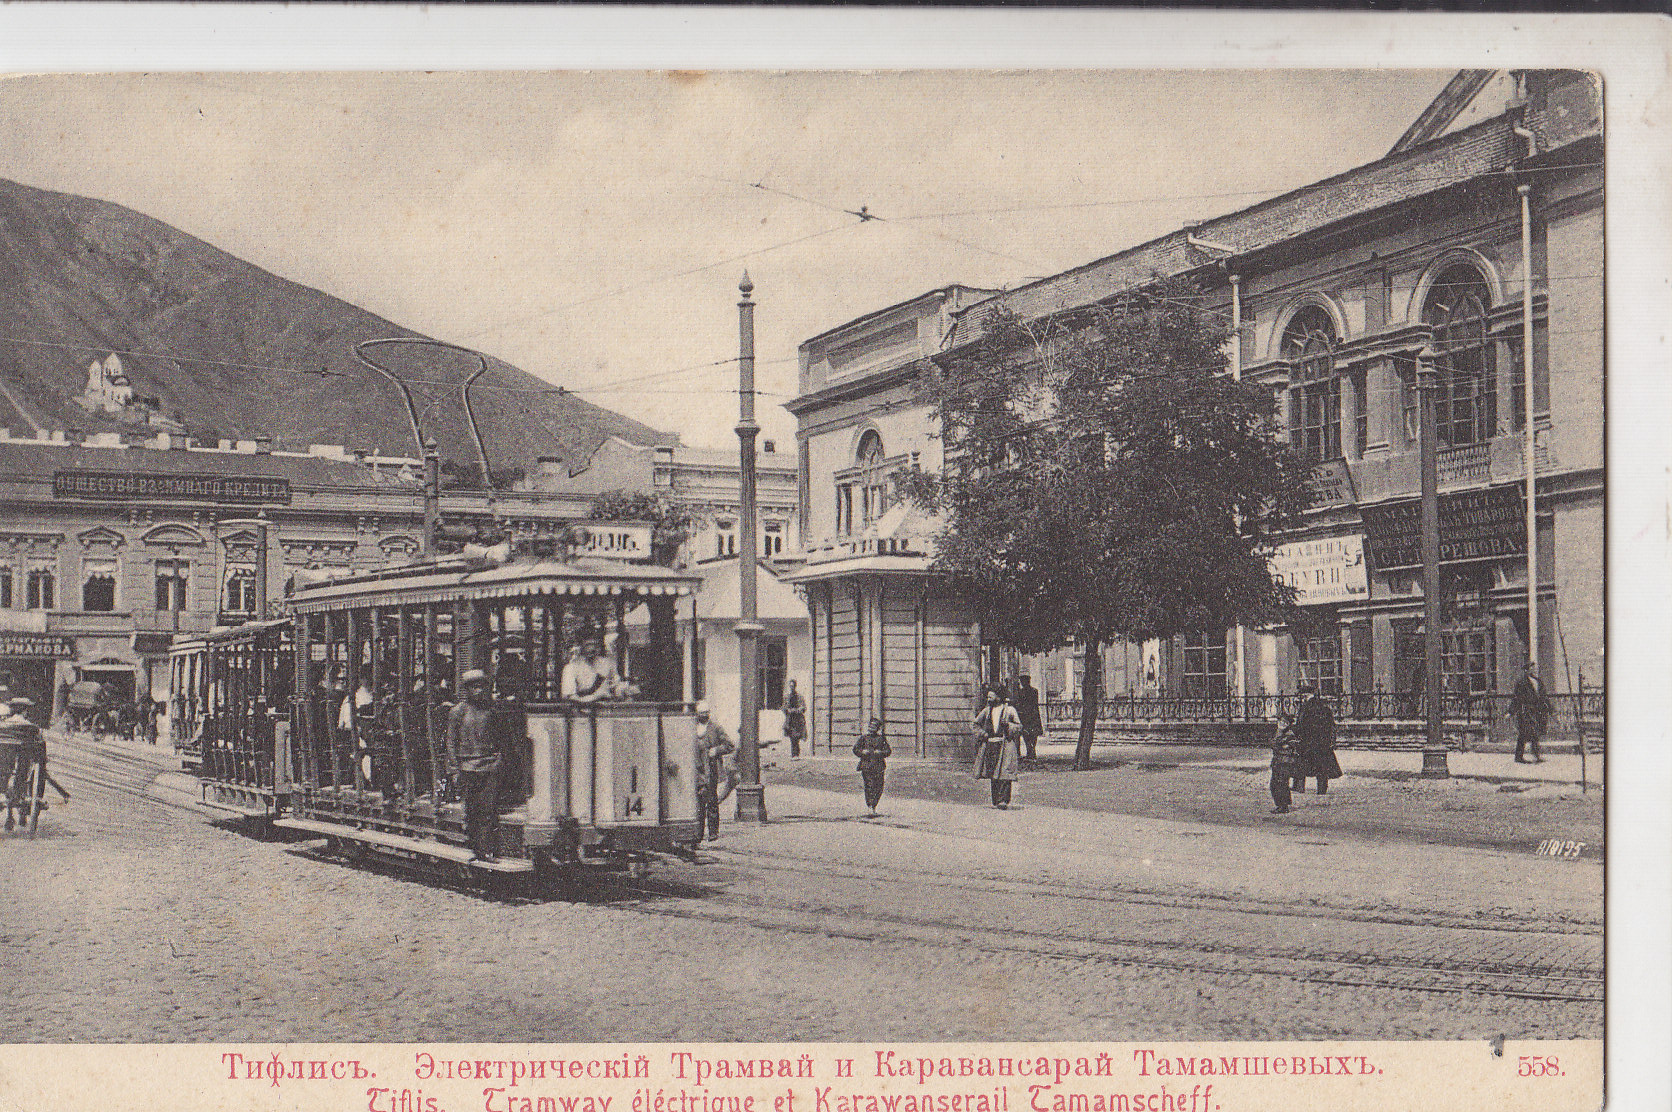 Тбилиси, Двухосный моторный вагон № 14; Тбилиси — Трамвай узкой колеи